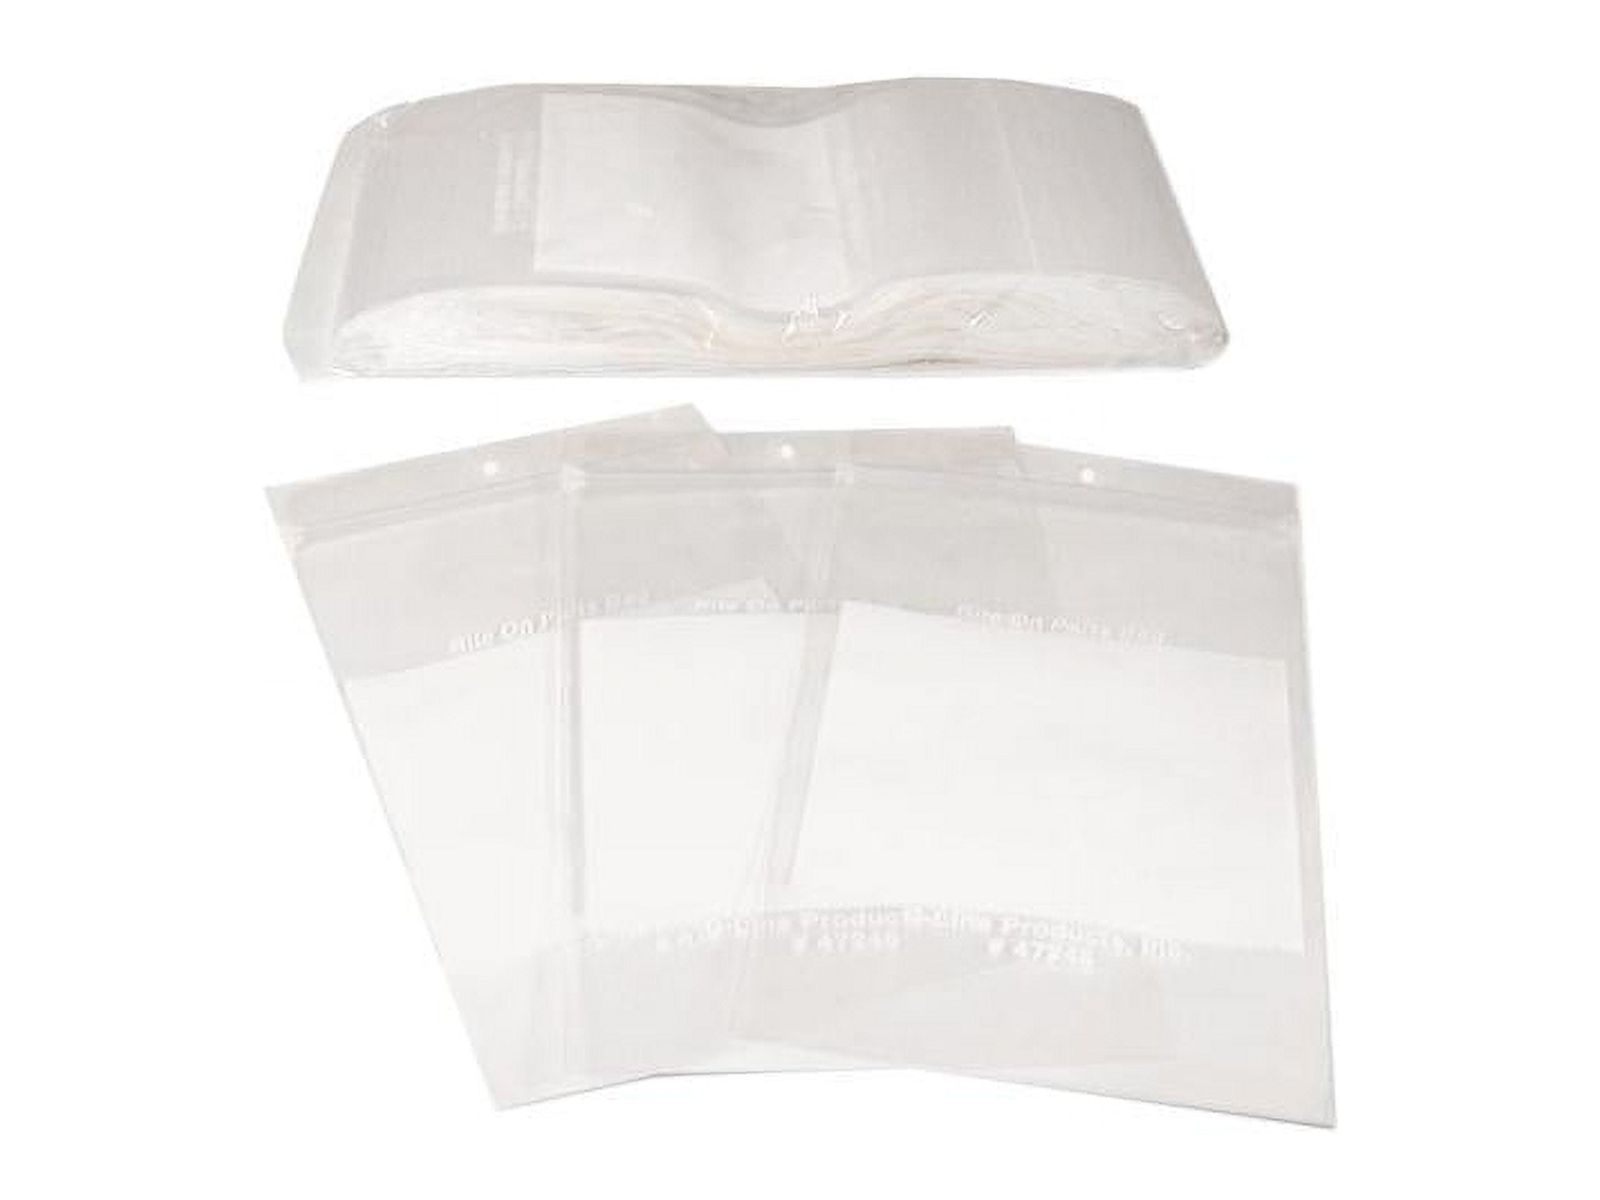 楽天Walmart 楽天市場店[送料無料] C-Line リクロージャブル4 x 6スモールパーツクリアポリ（ホワイトIDパネル付）袋、1000 ct [楽天海外通販] | C-Line Recloseable 4 x 6 Small Parts Clear Poly with White ID Panel Bags, 1000 ct